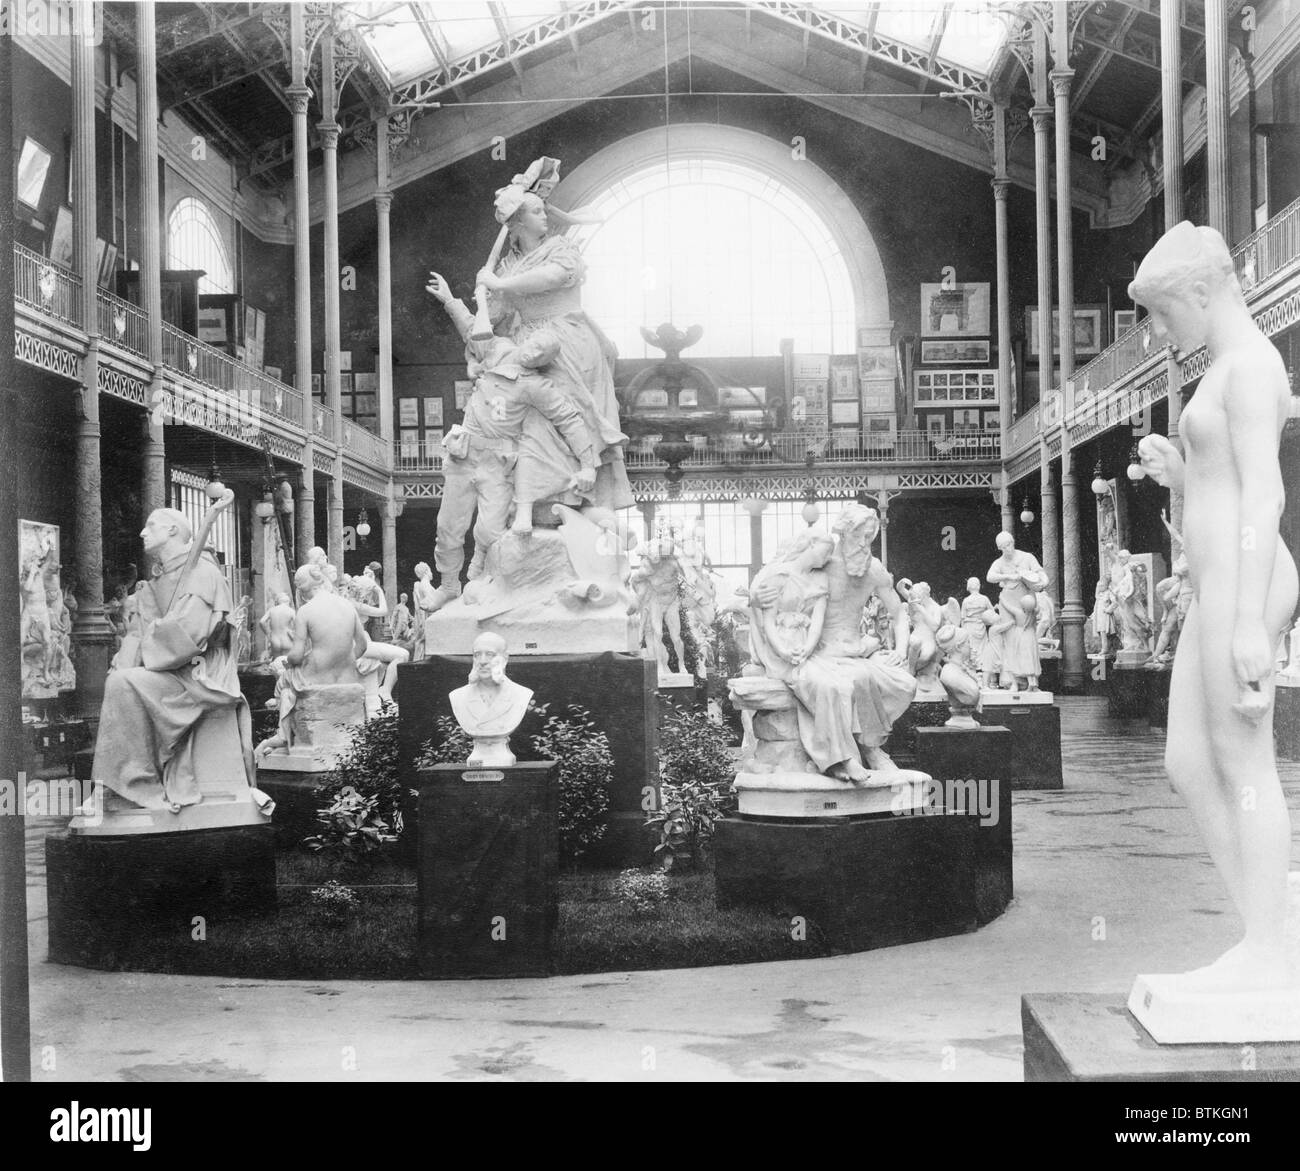 Beaux-Arts-Skulptur in der Galerie Rapp, Palace of Fine Arts, Paris Ausstellung 1889 ausgestellt. Stockfoto